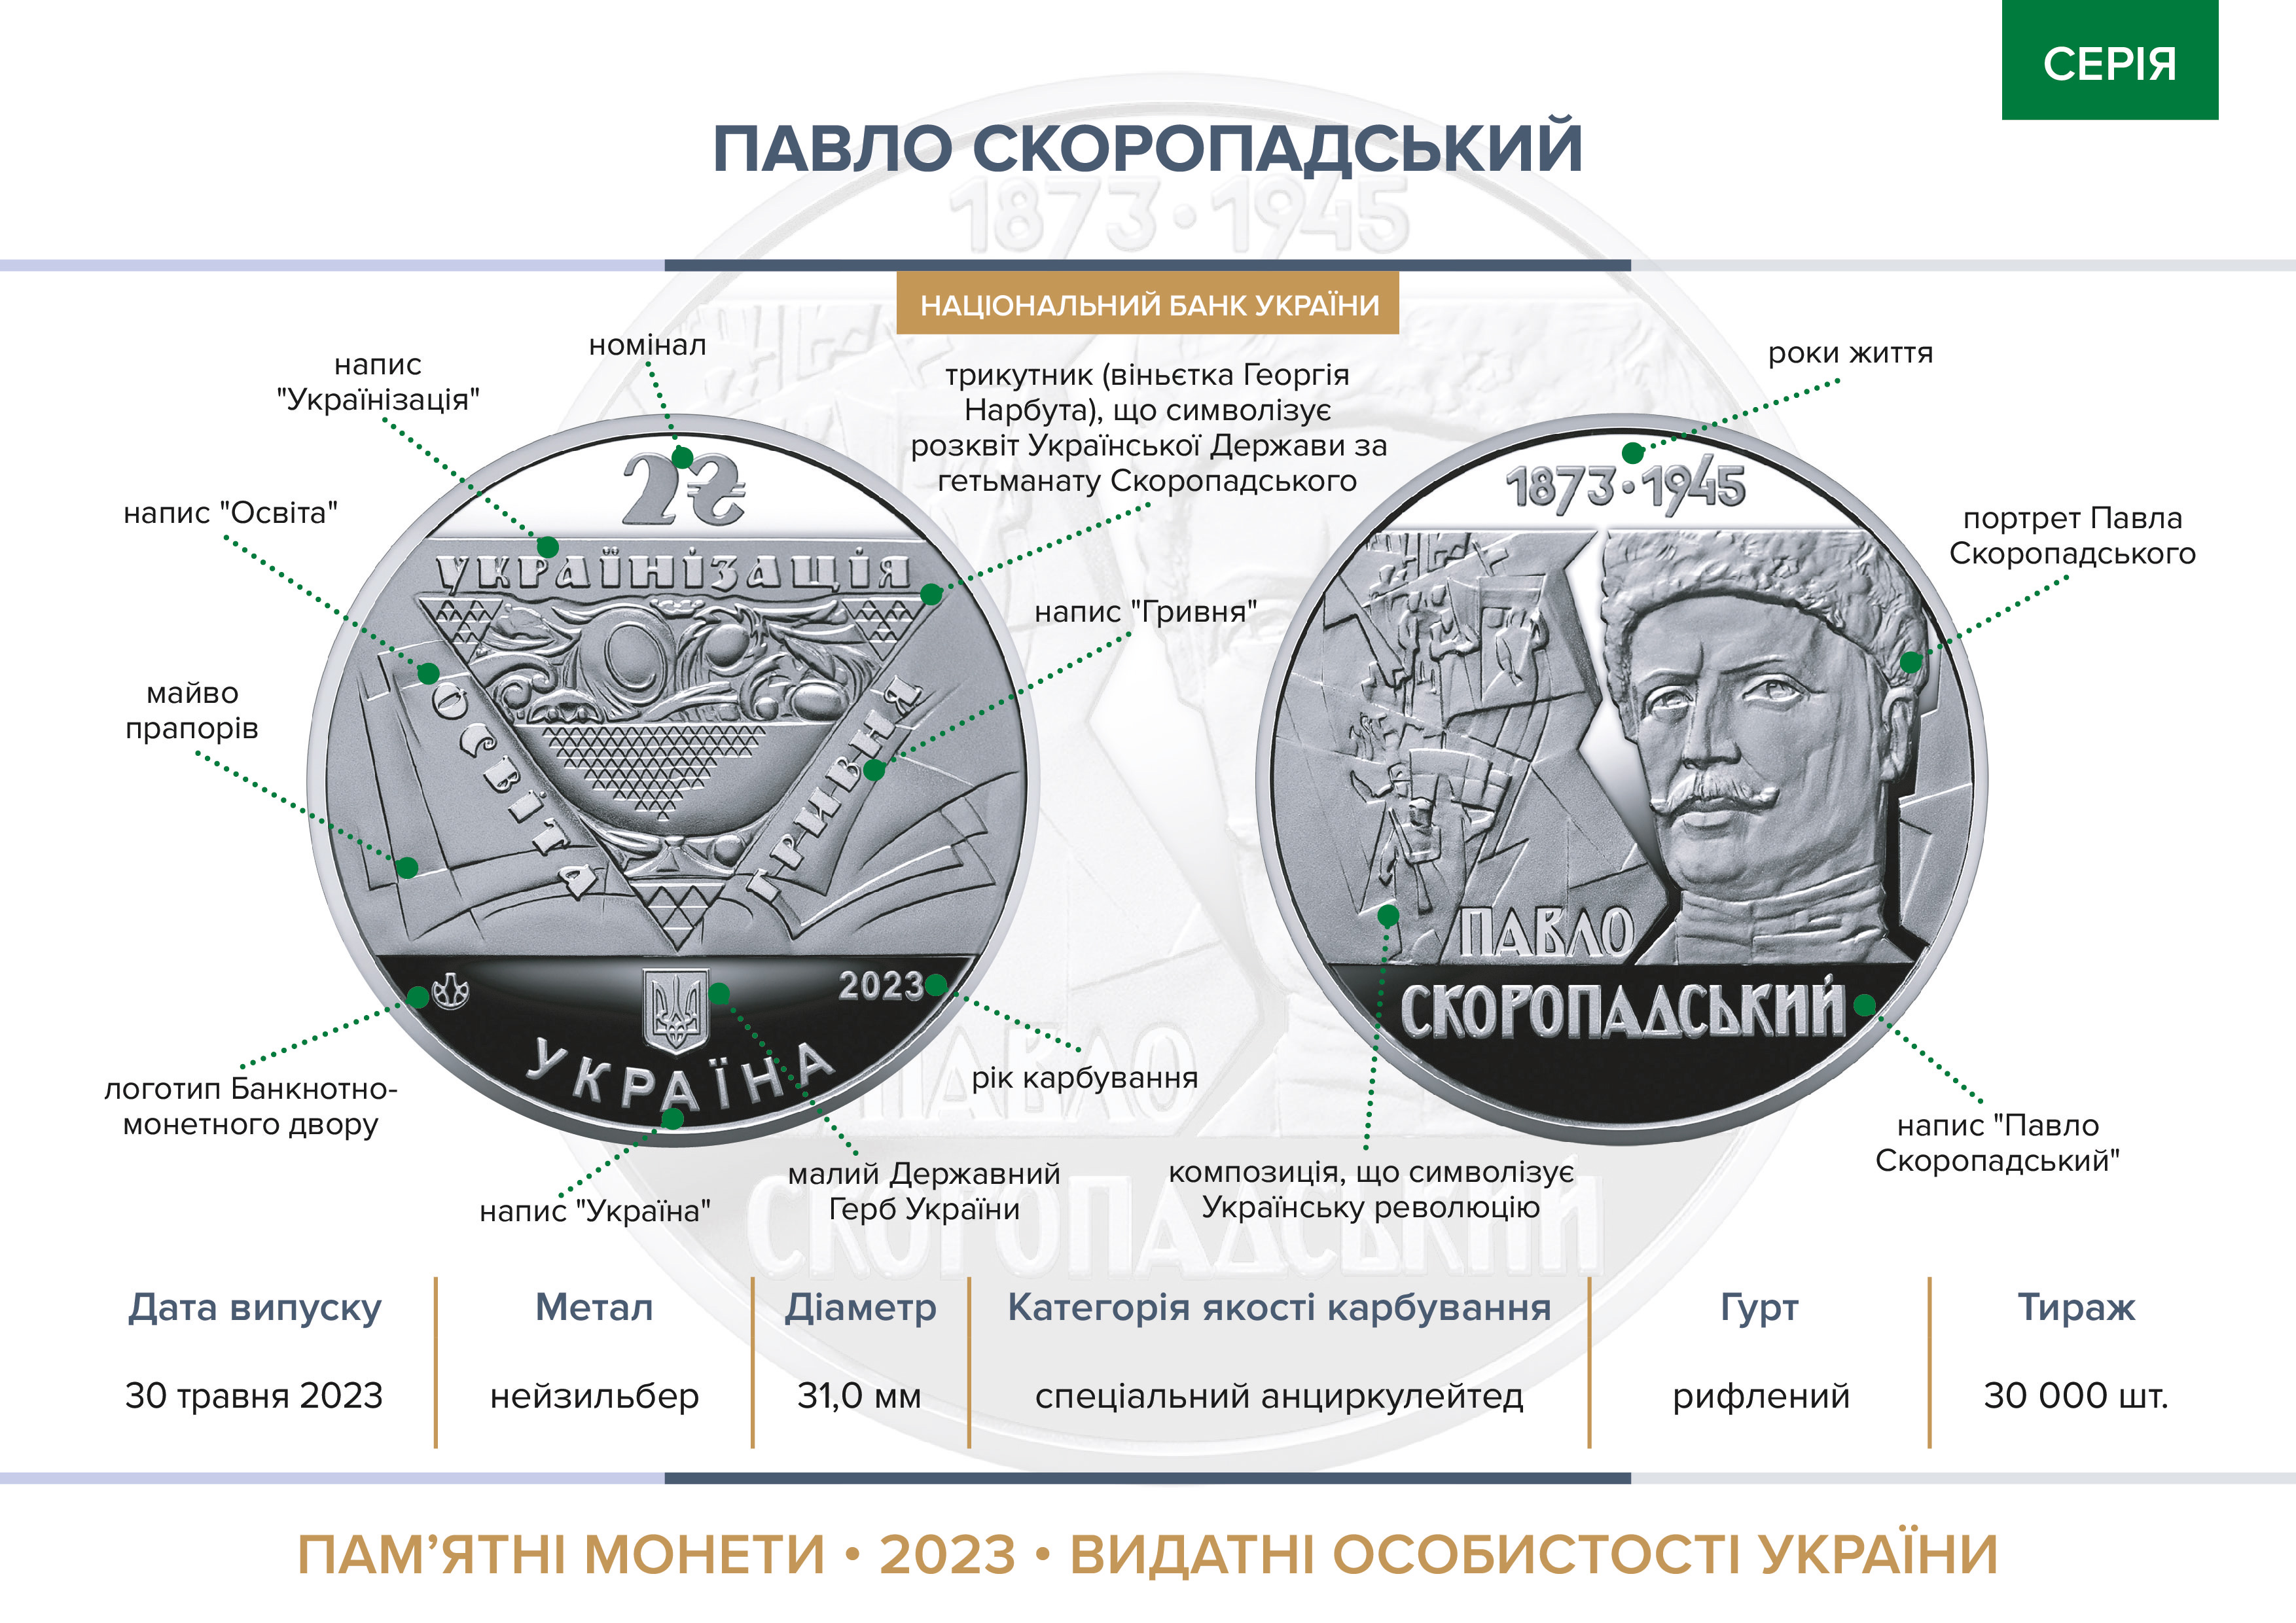 Пам’ятна монета "Павло Скоропадський" уведена в обіг із 30 травня 2023 року